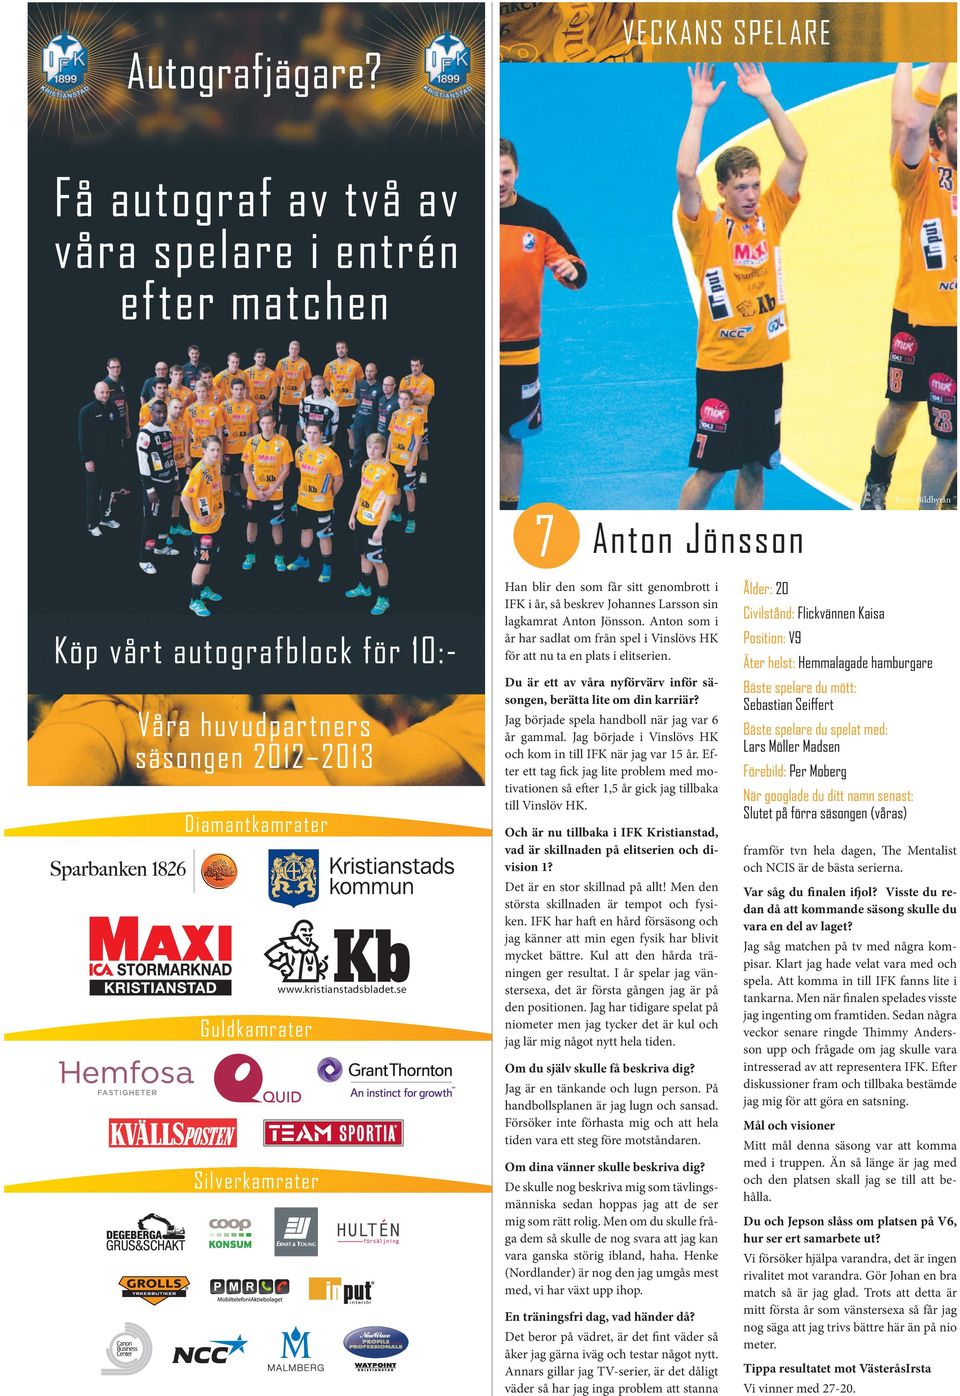 Guldkamrater Silverkamrater www.kristianstadsbladet.se Han blir den som får sitt genombrott i IFK i år, så beskrev Johannes Larsson sin lagkamrat Anton Jönsson.